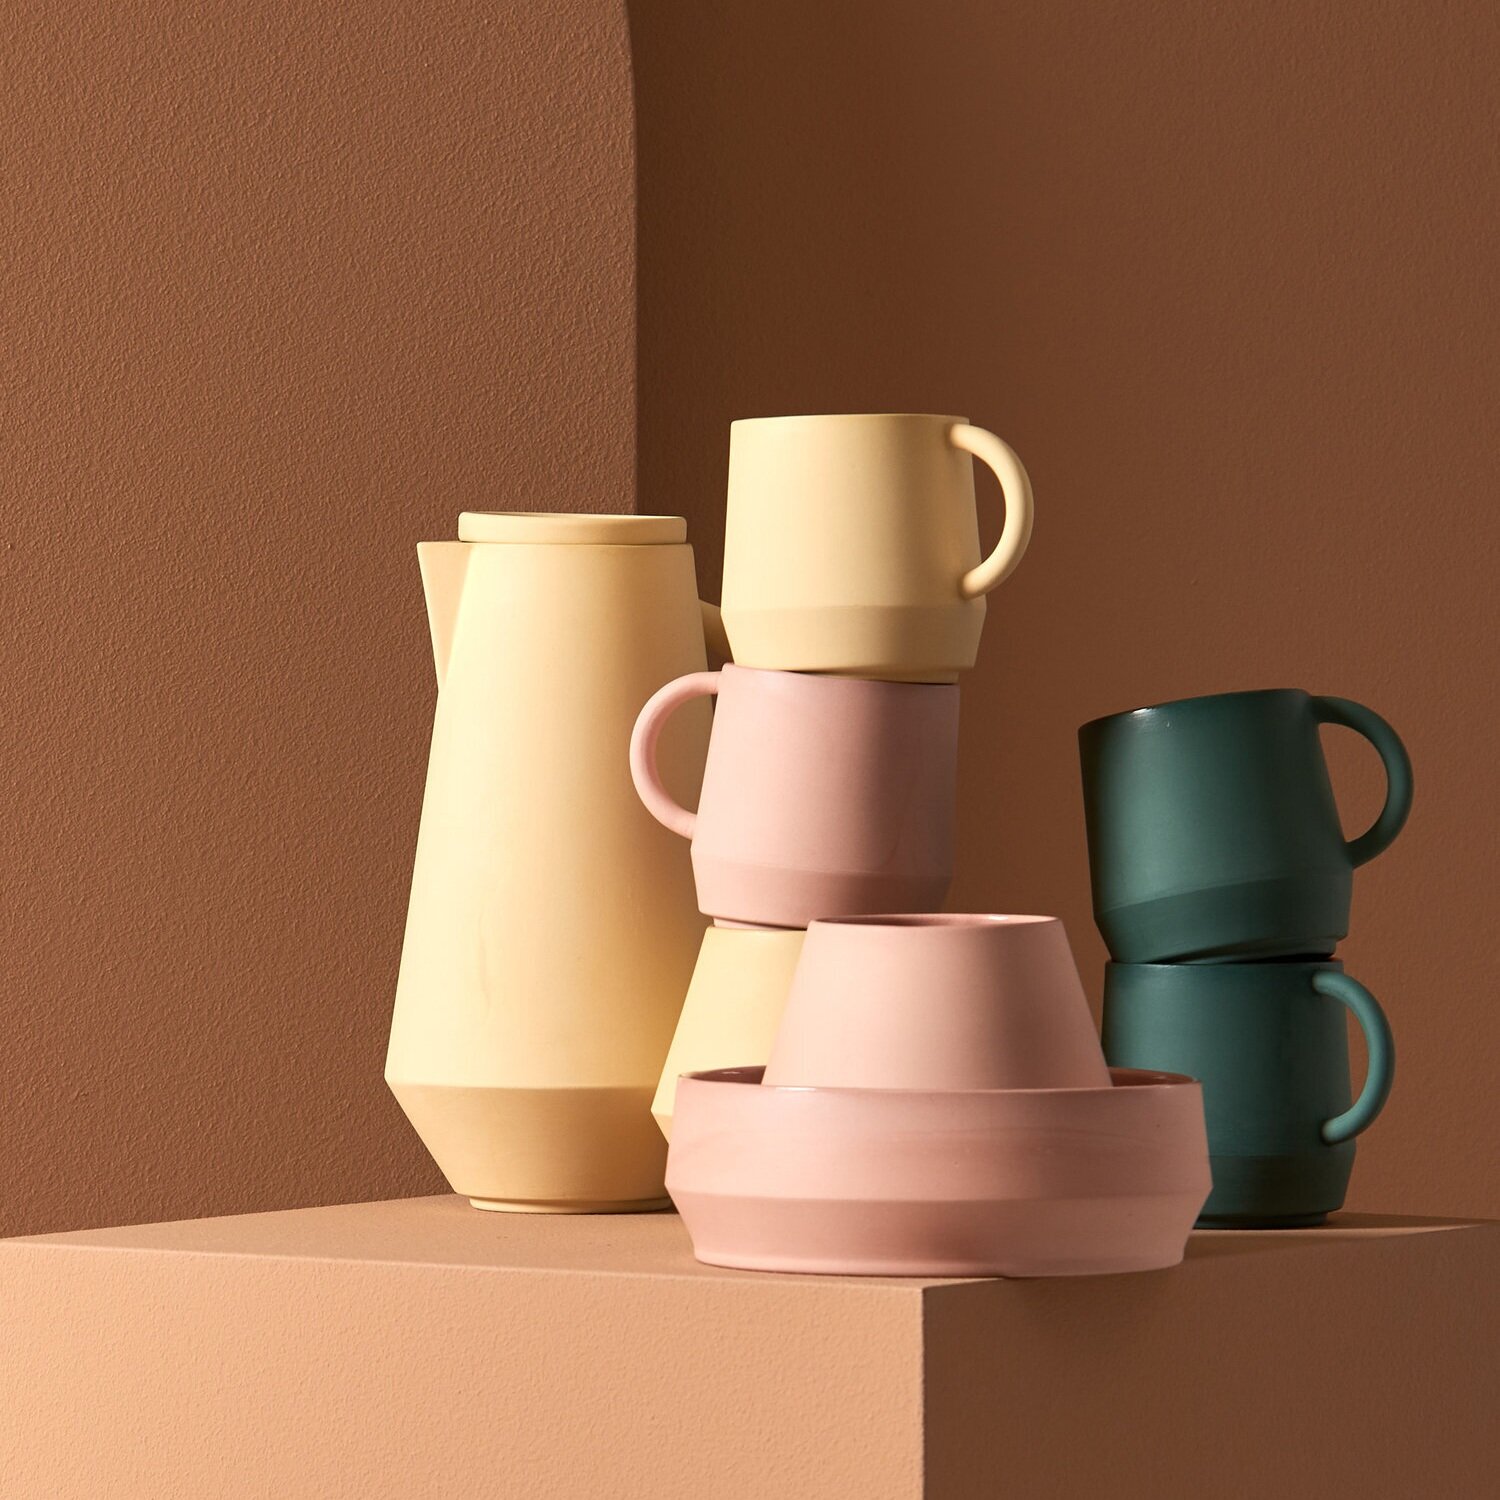  Unison Ceramic Cup -  Schneid Studio  